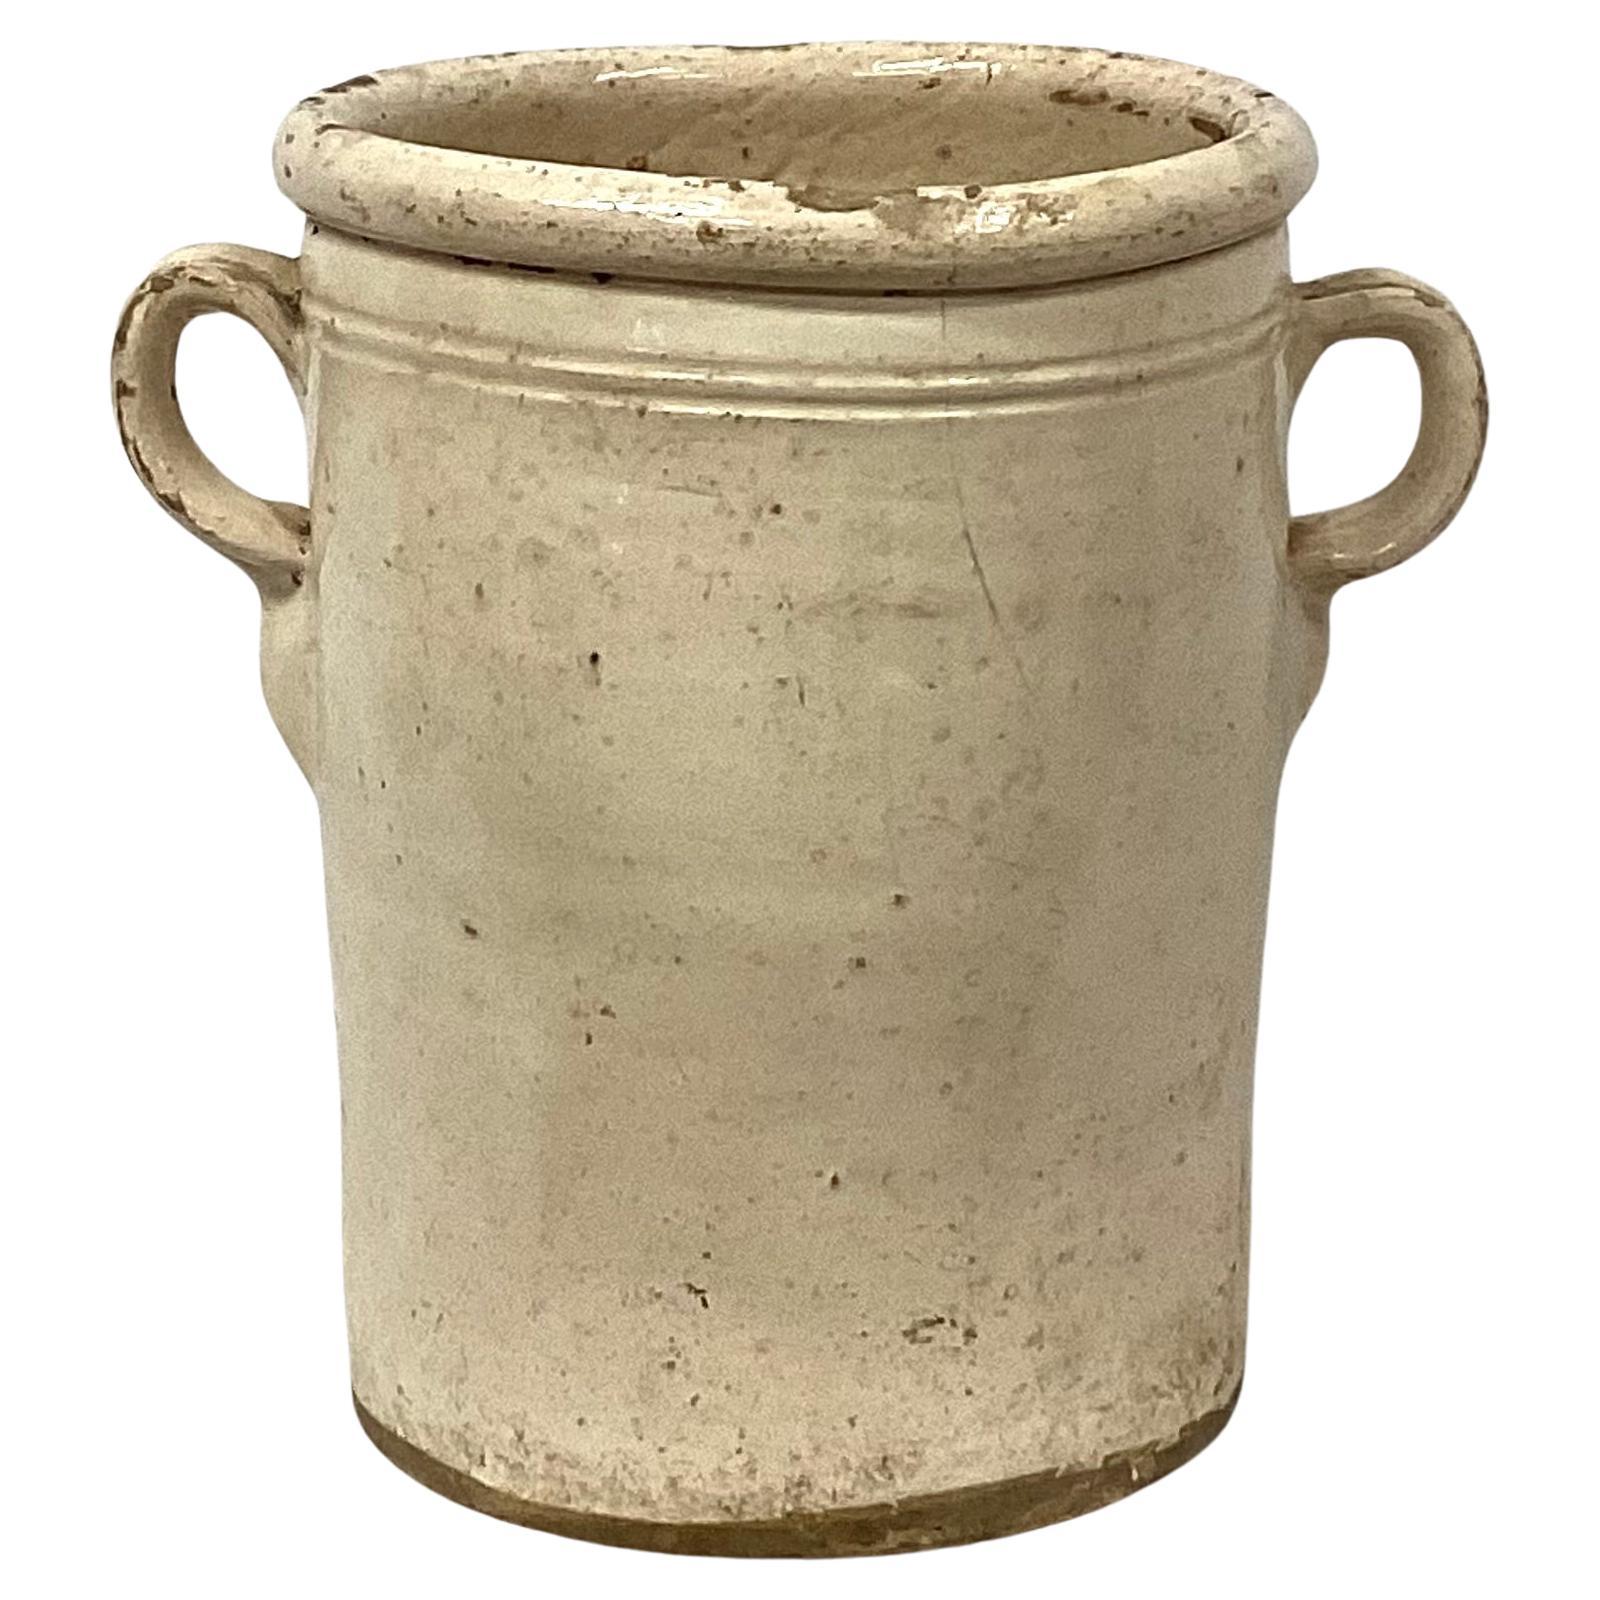 Pot de conservation pour chiminea en céramique italienne du 19e siècle avec poignées. Ces pots servaient à conserver les aliments tels que les fruits, la viande ou les légumes. Ils ont été conçus pour être utilisés en conjonction avec un poêle à